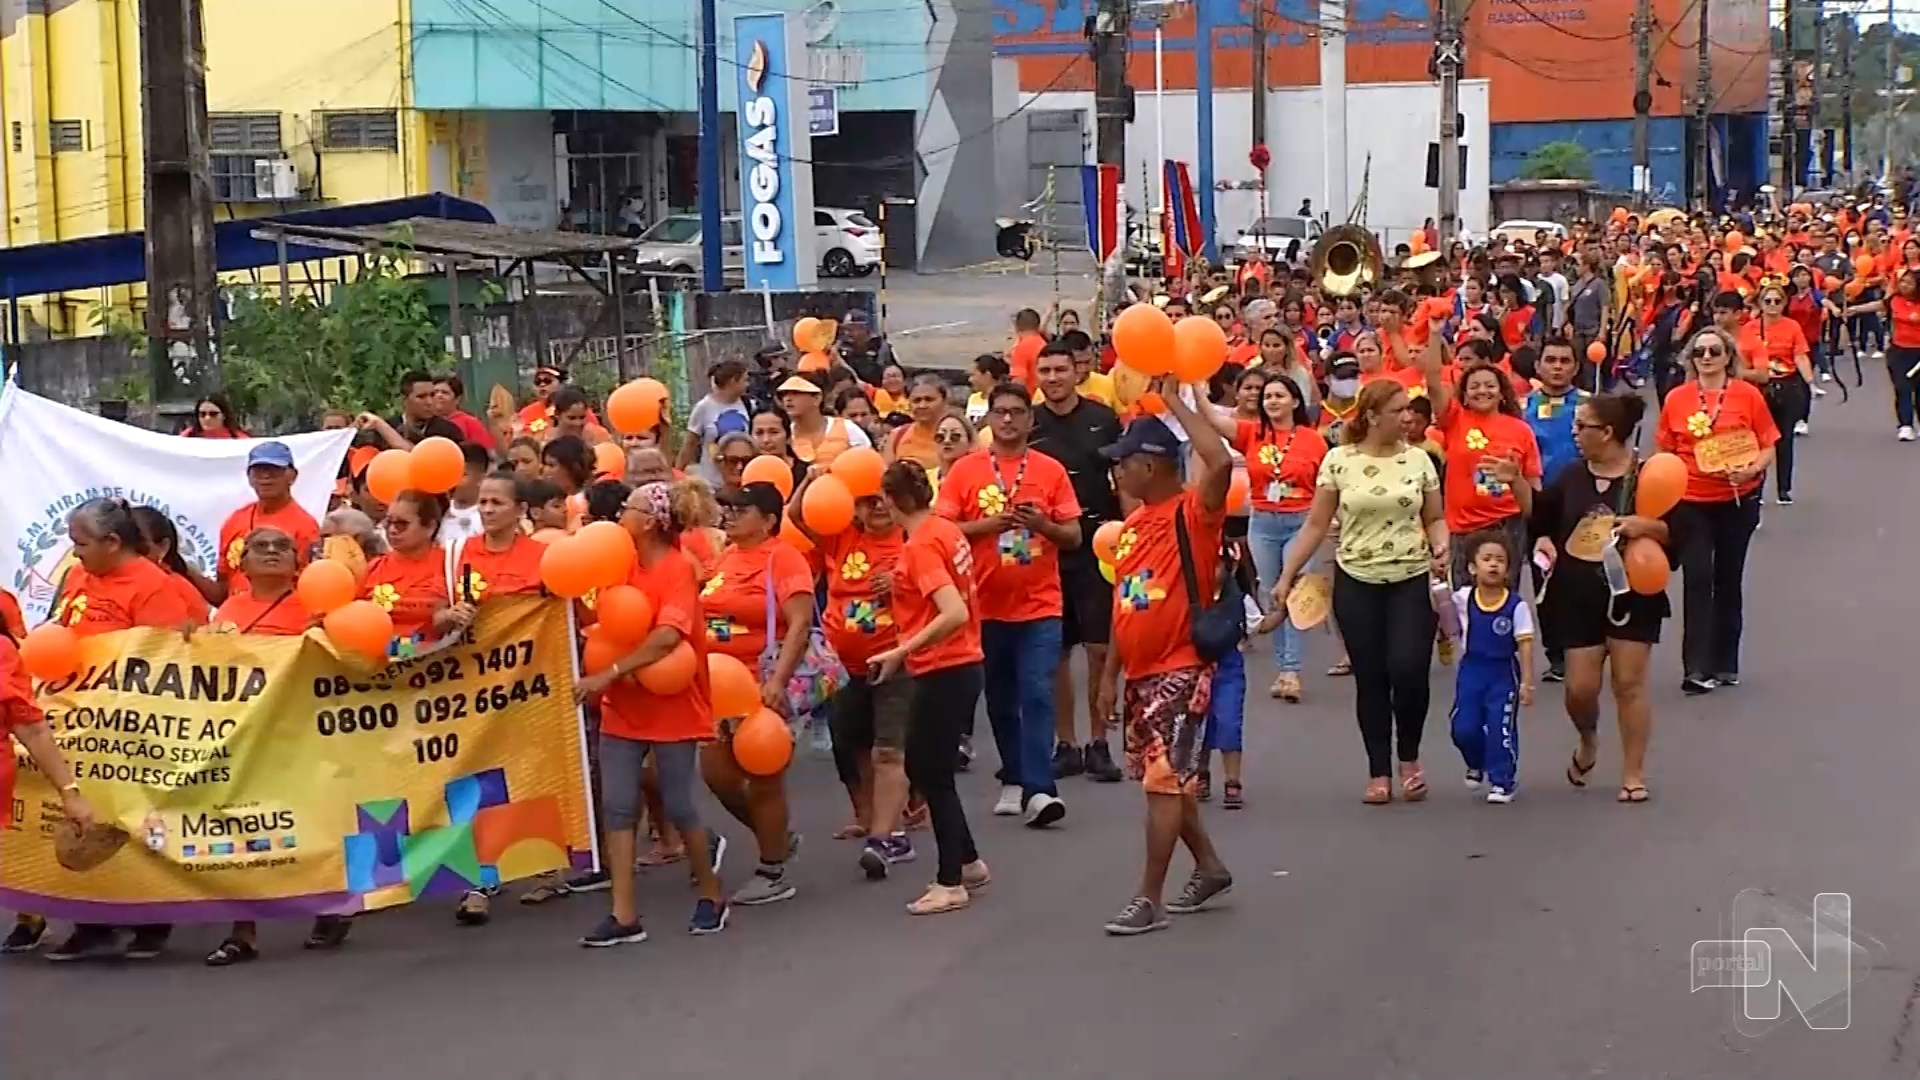 Caminhada contra o abuso sexual infanto-juvenil é realizada em Manaus. Foto: Reprodução/ TV Norte Amazonas.